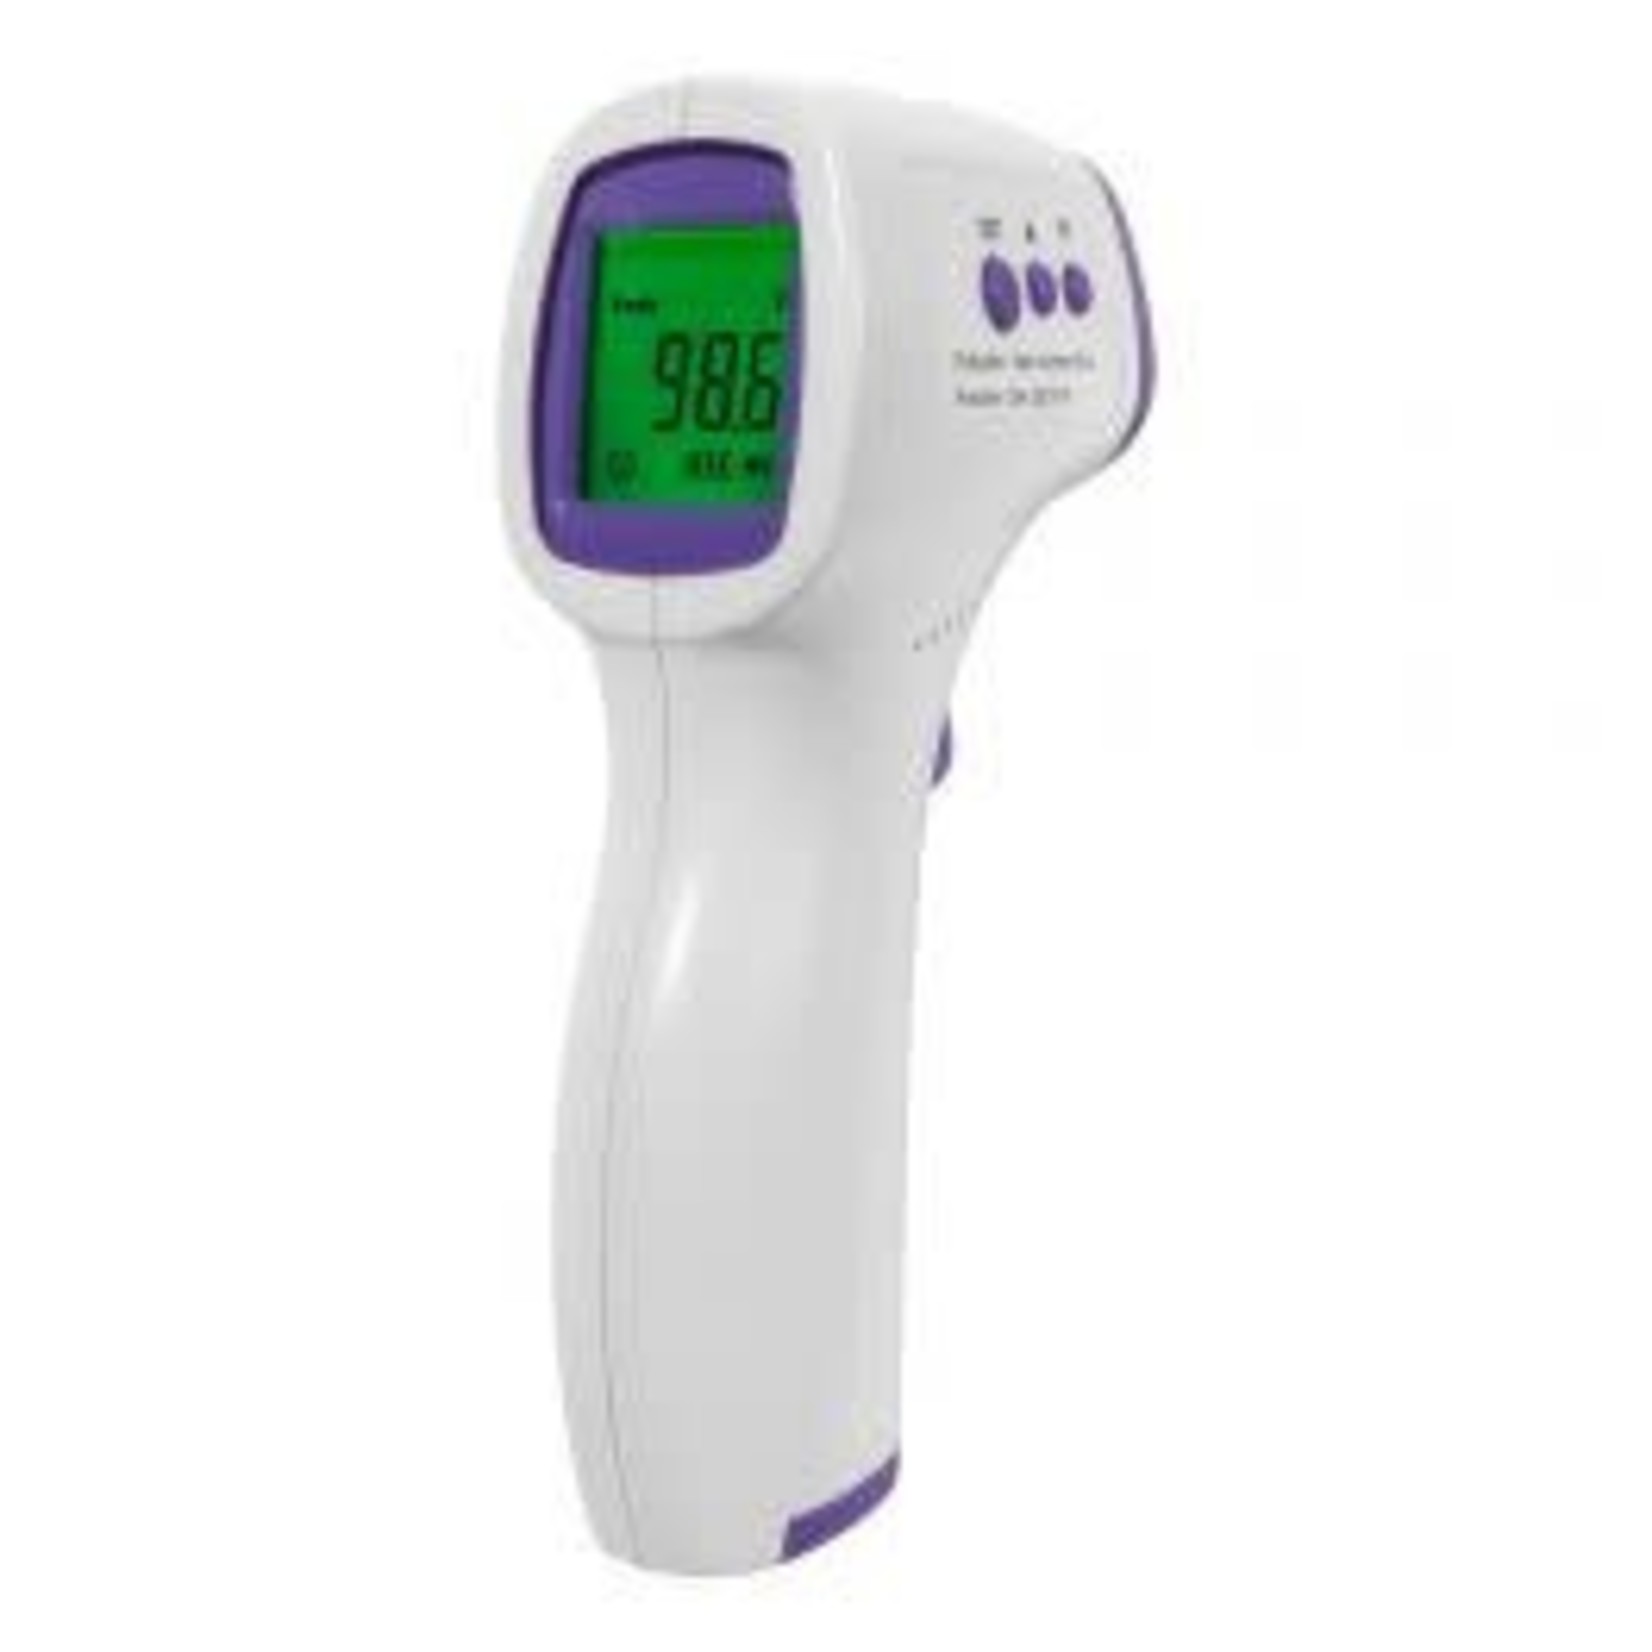 ESCALI ESCALI Infrared Forehead Thermometer